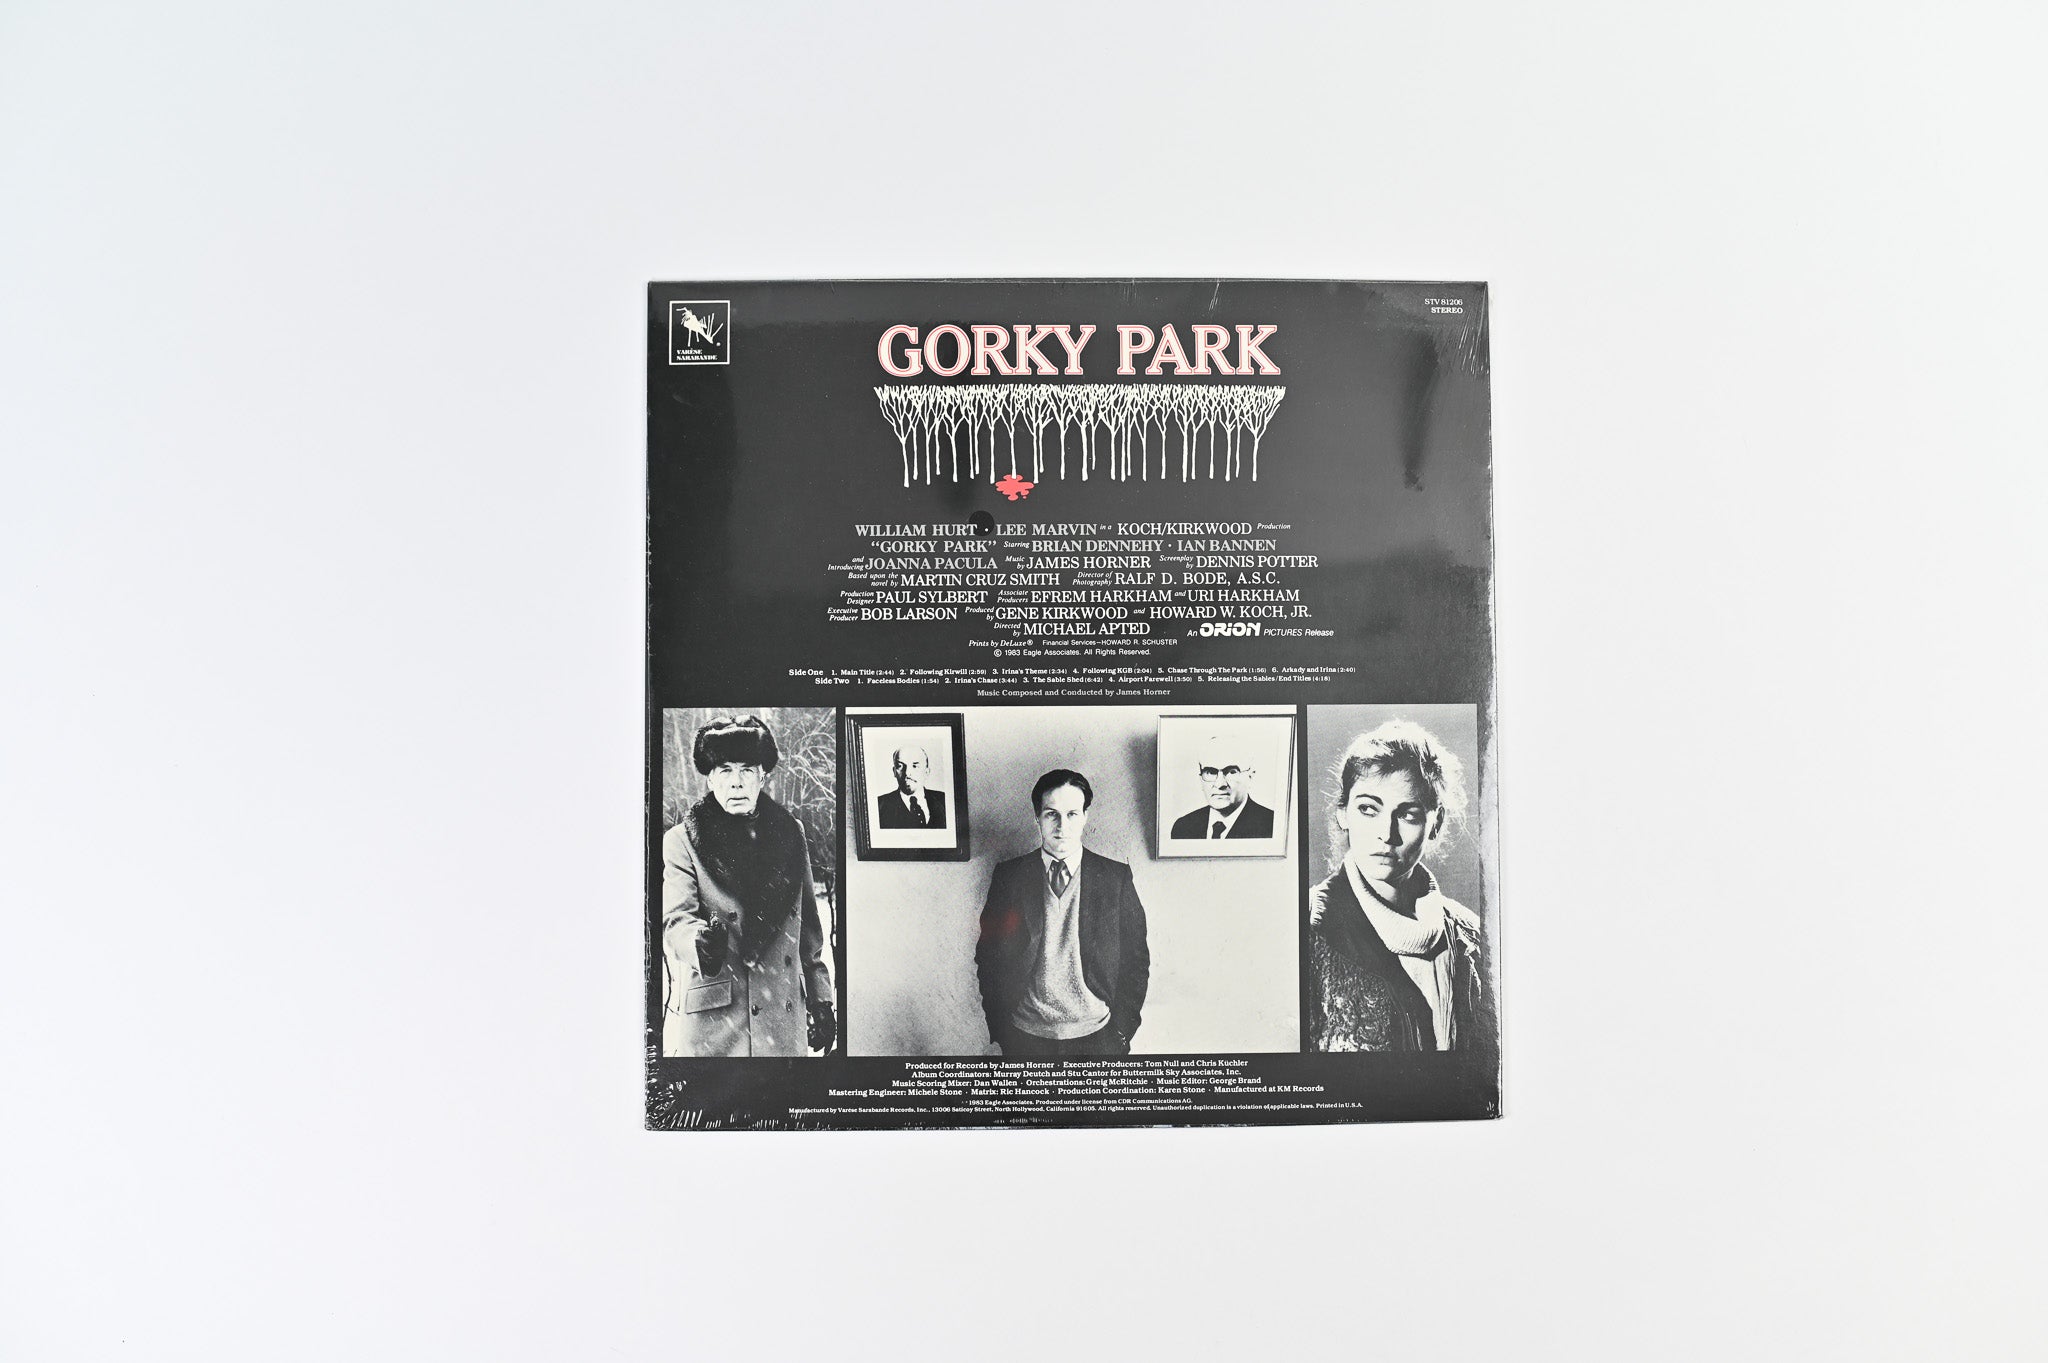 James Horner - Gorky Park (Original Motion Picture Soundtrack) on Varese Sarabande Sealed